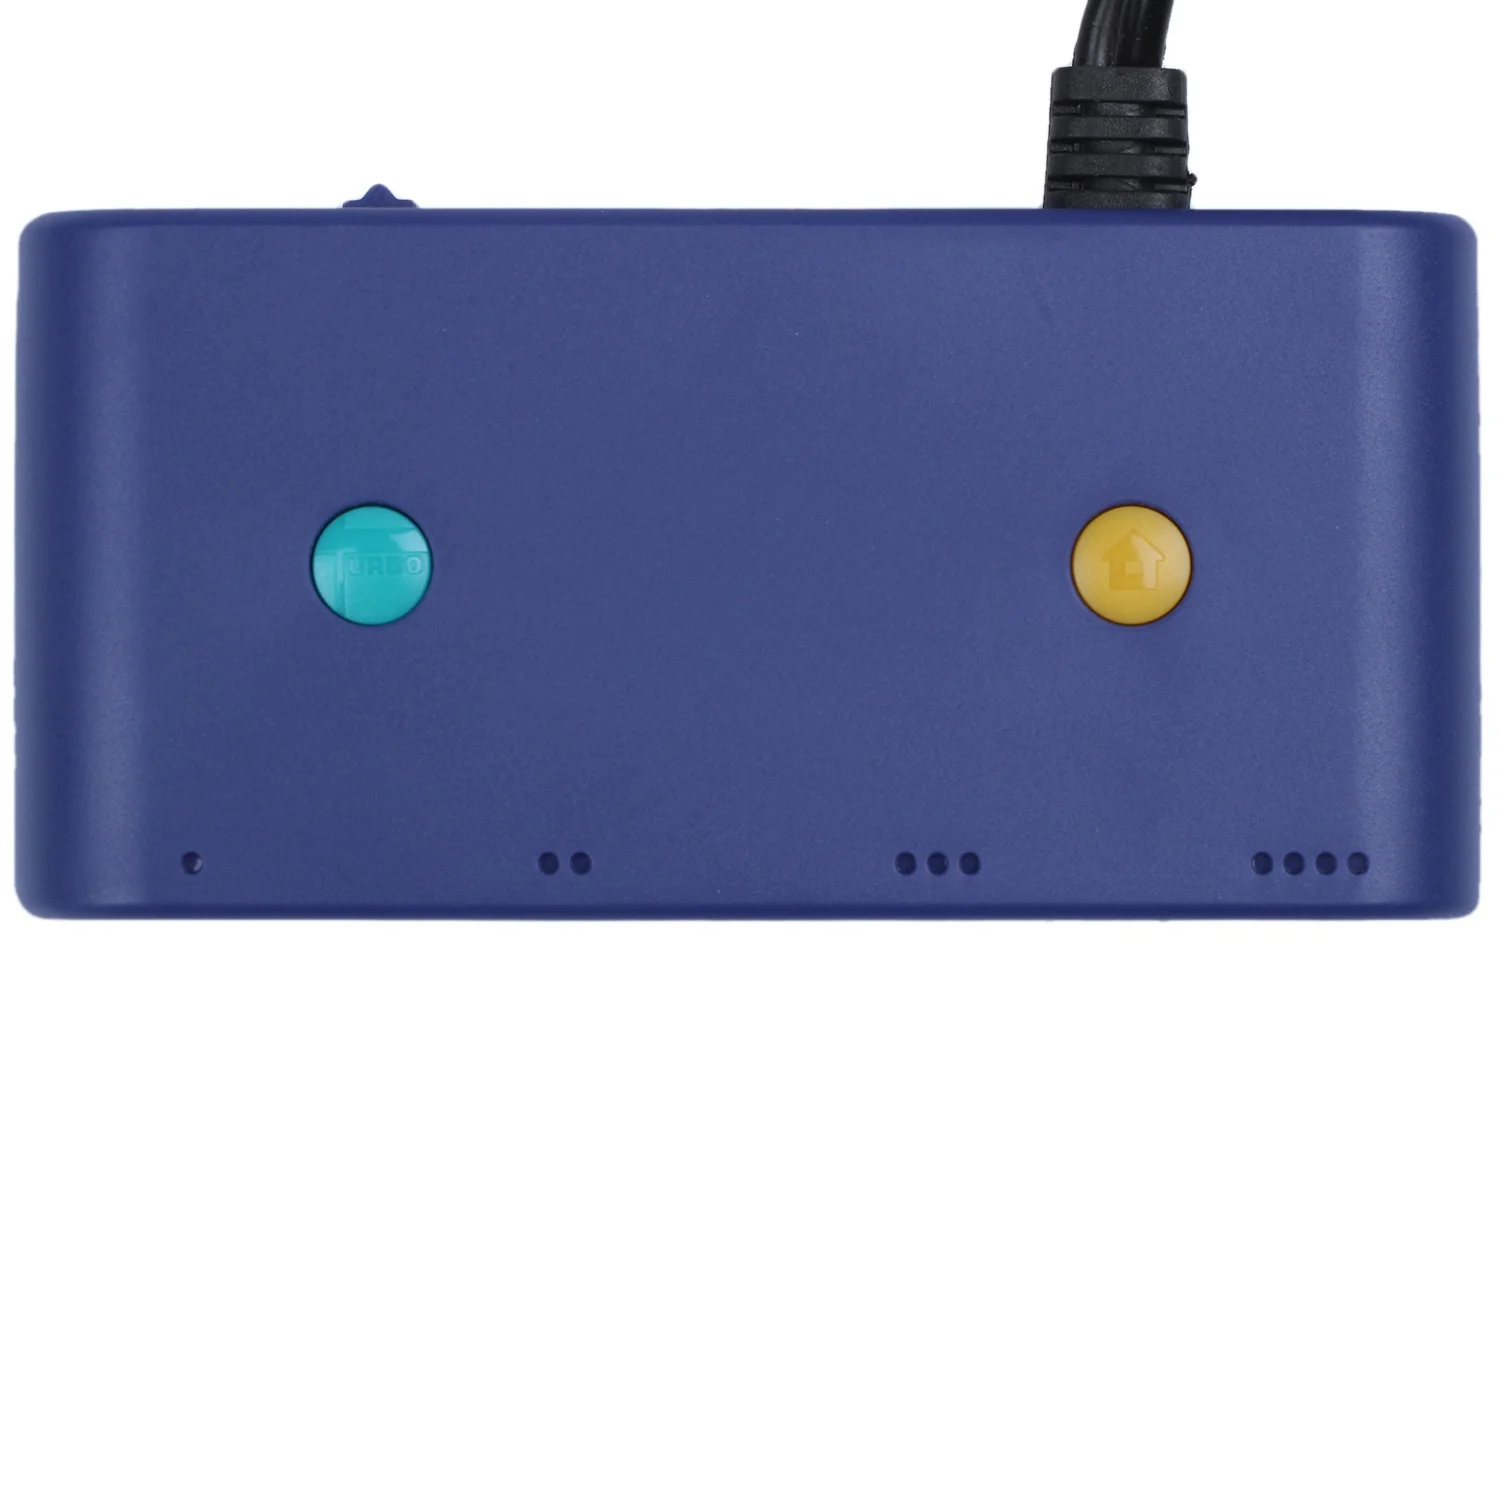 Gamecube vezérlő adapterhez Nintendo Switch Wii U PC 4 portokhoz Turbo és Home gomb móddal Nincs illesztőprogram - 4